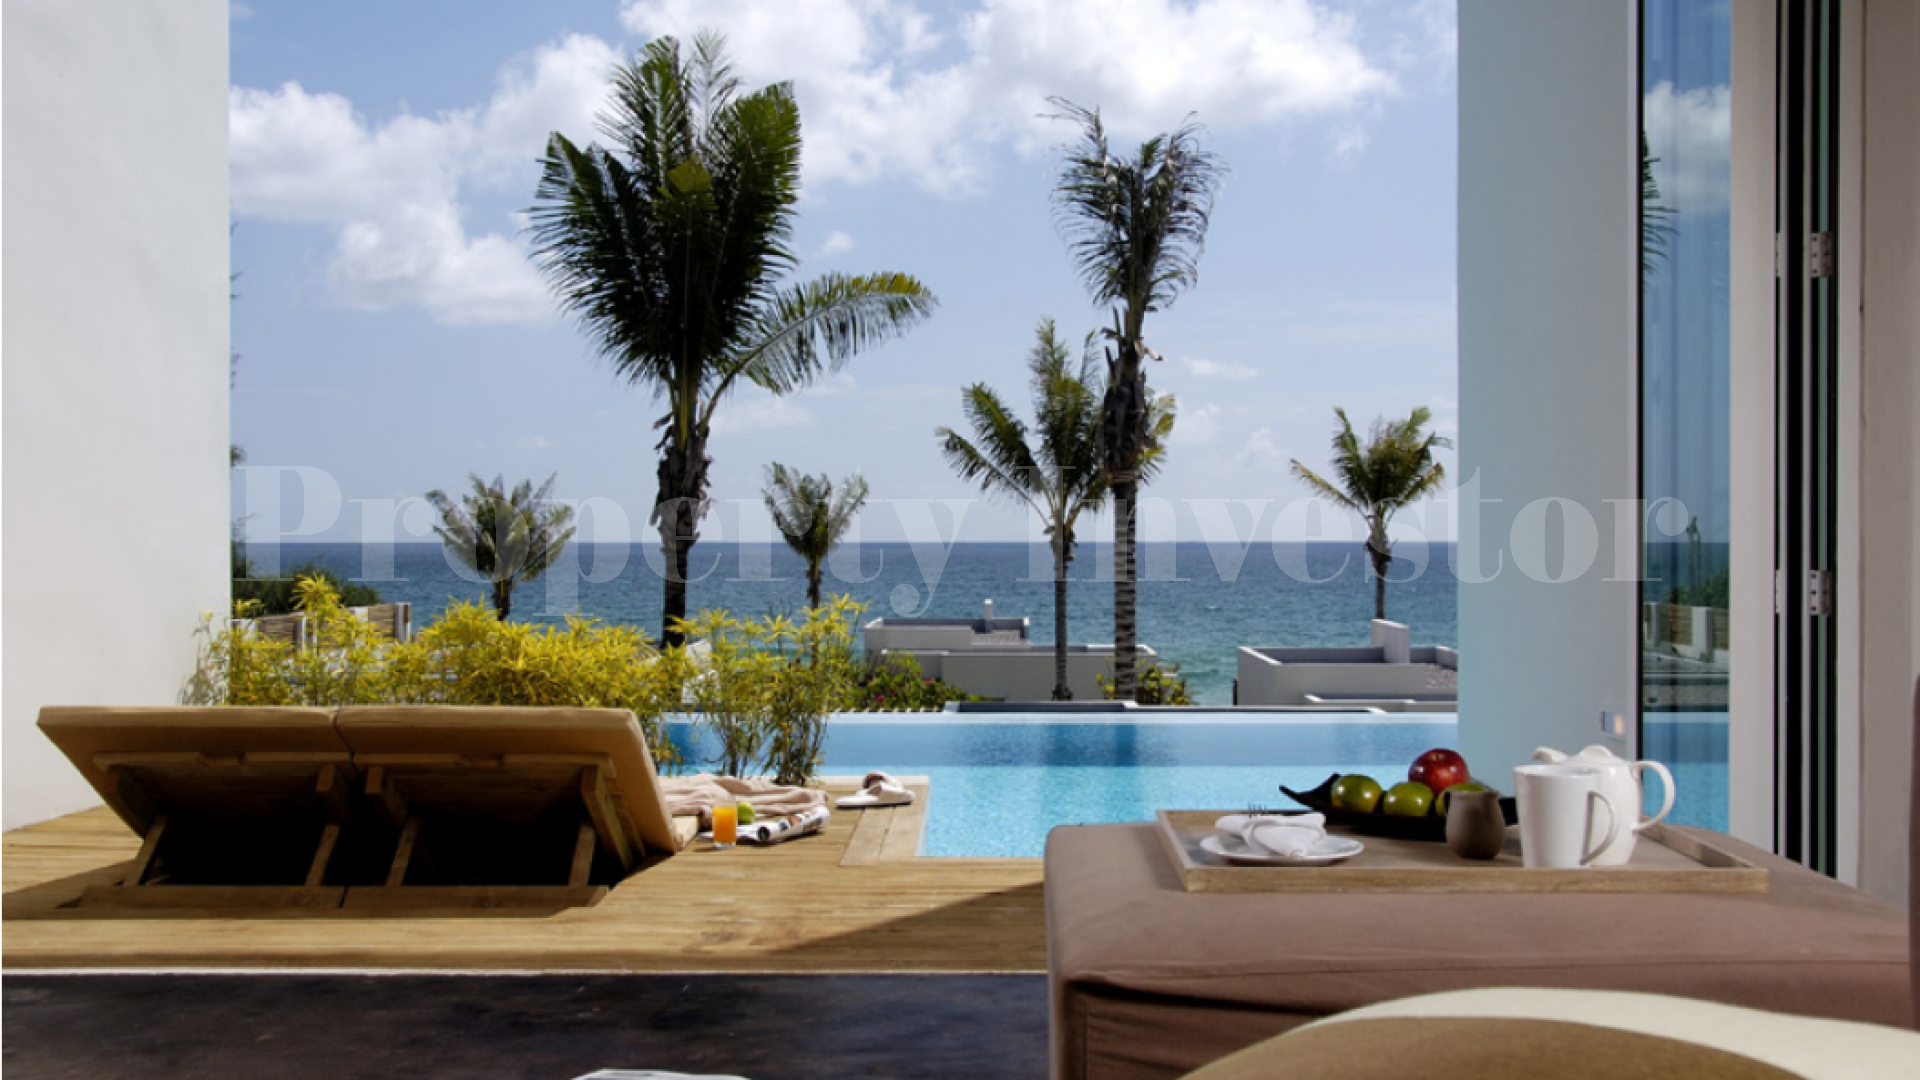 Продаются резиденции с 3 спальнями в апарт-отеле на Багамах (Residence 115)